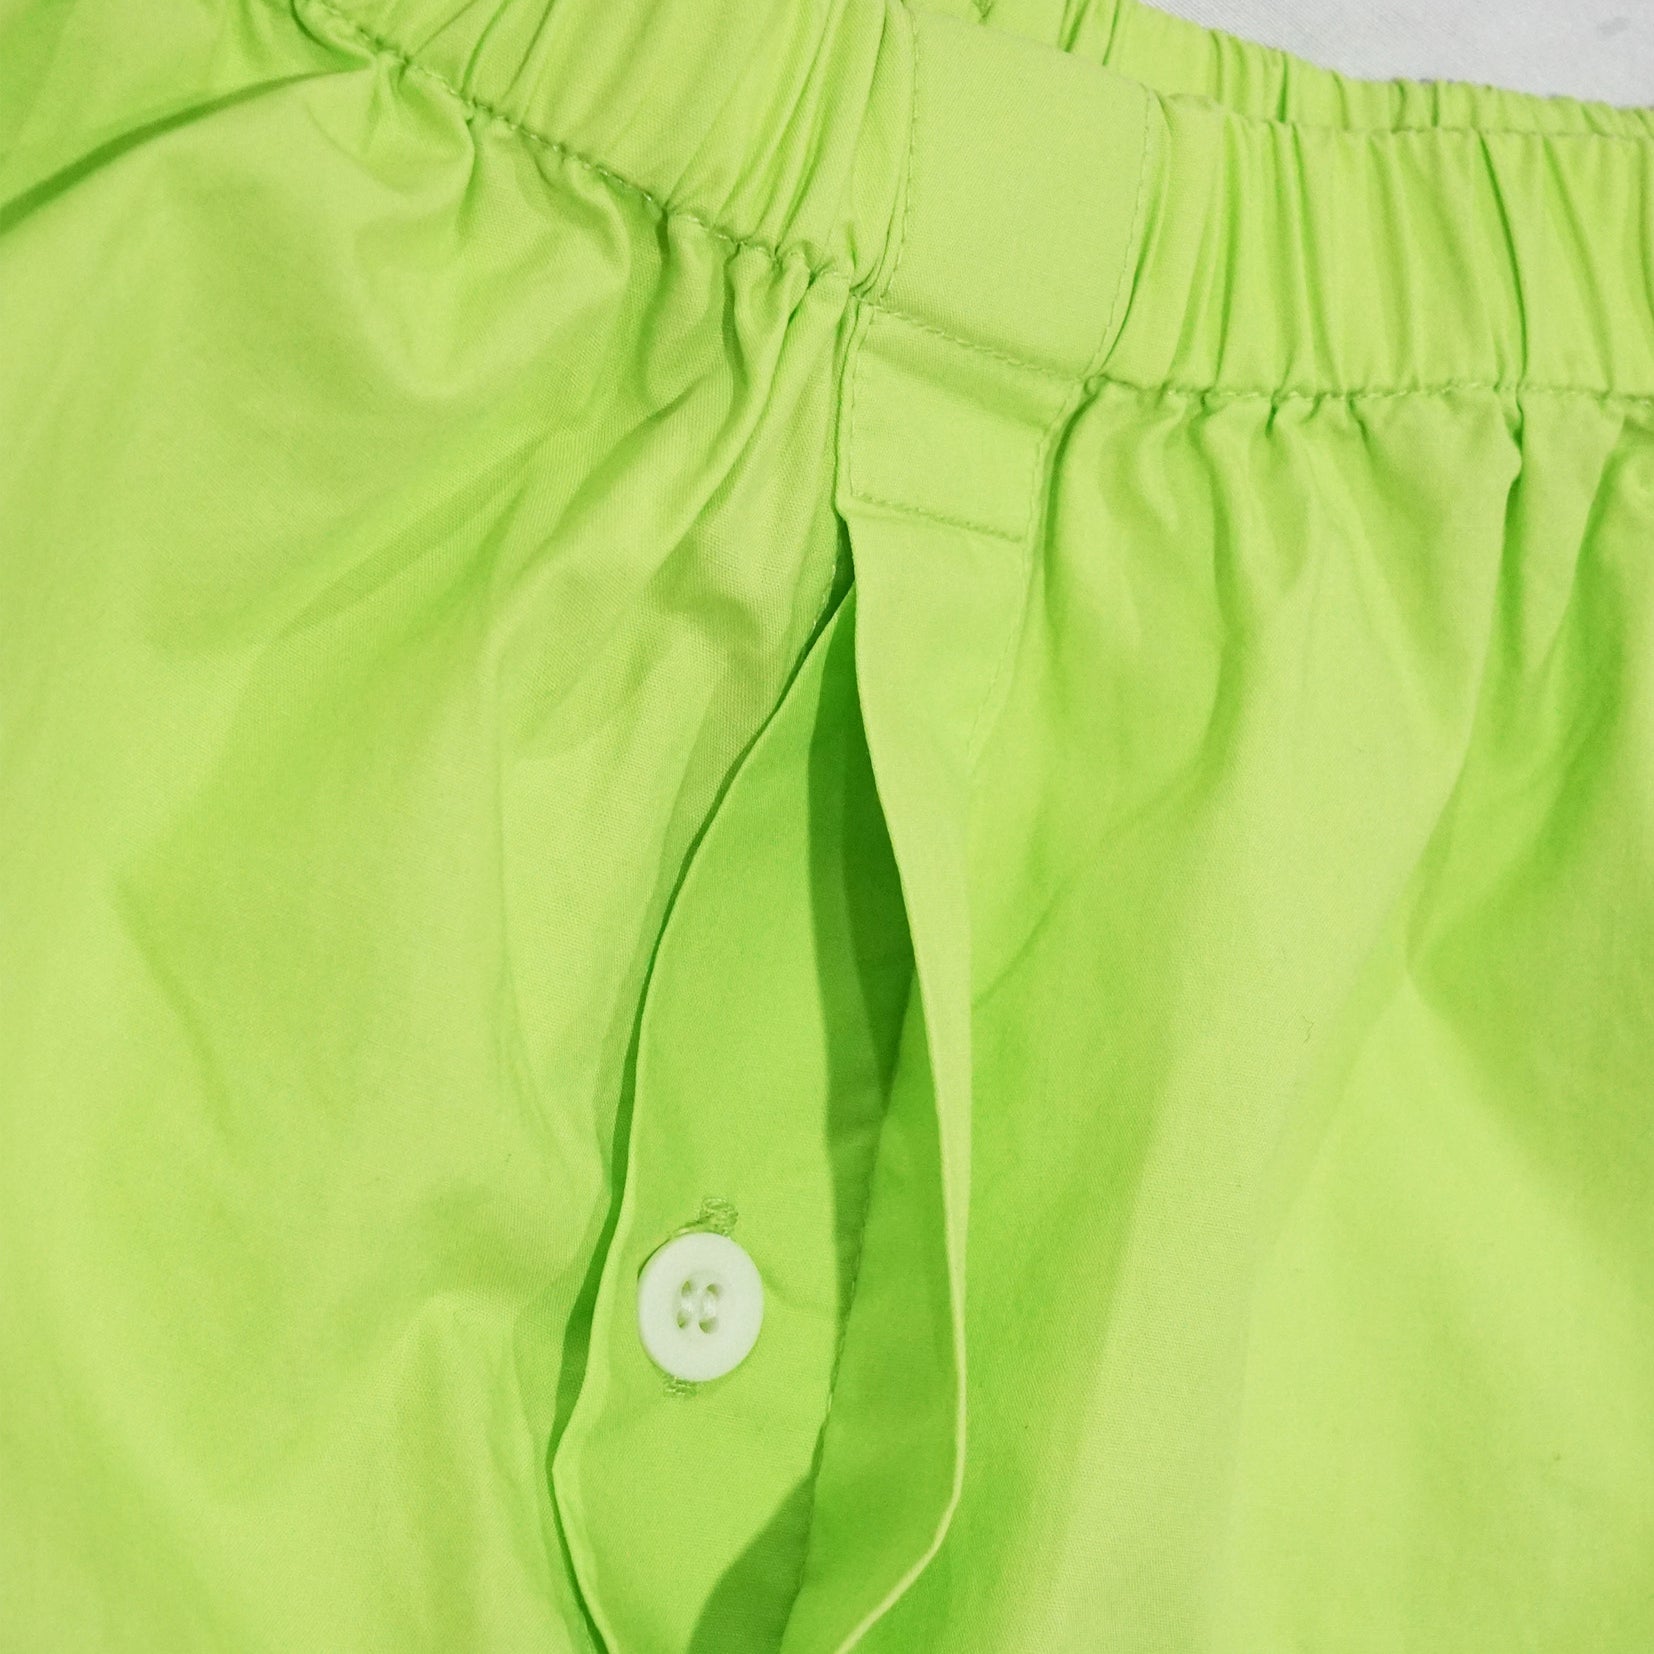 Unisex boxer shorts underwear in green